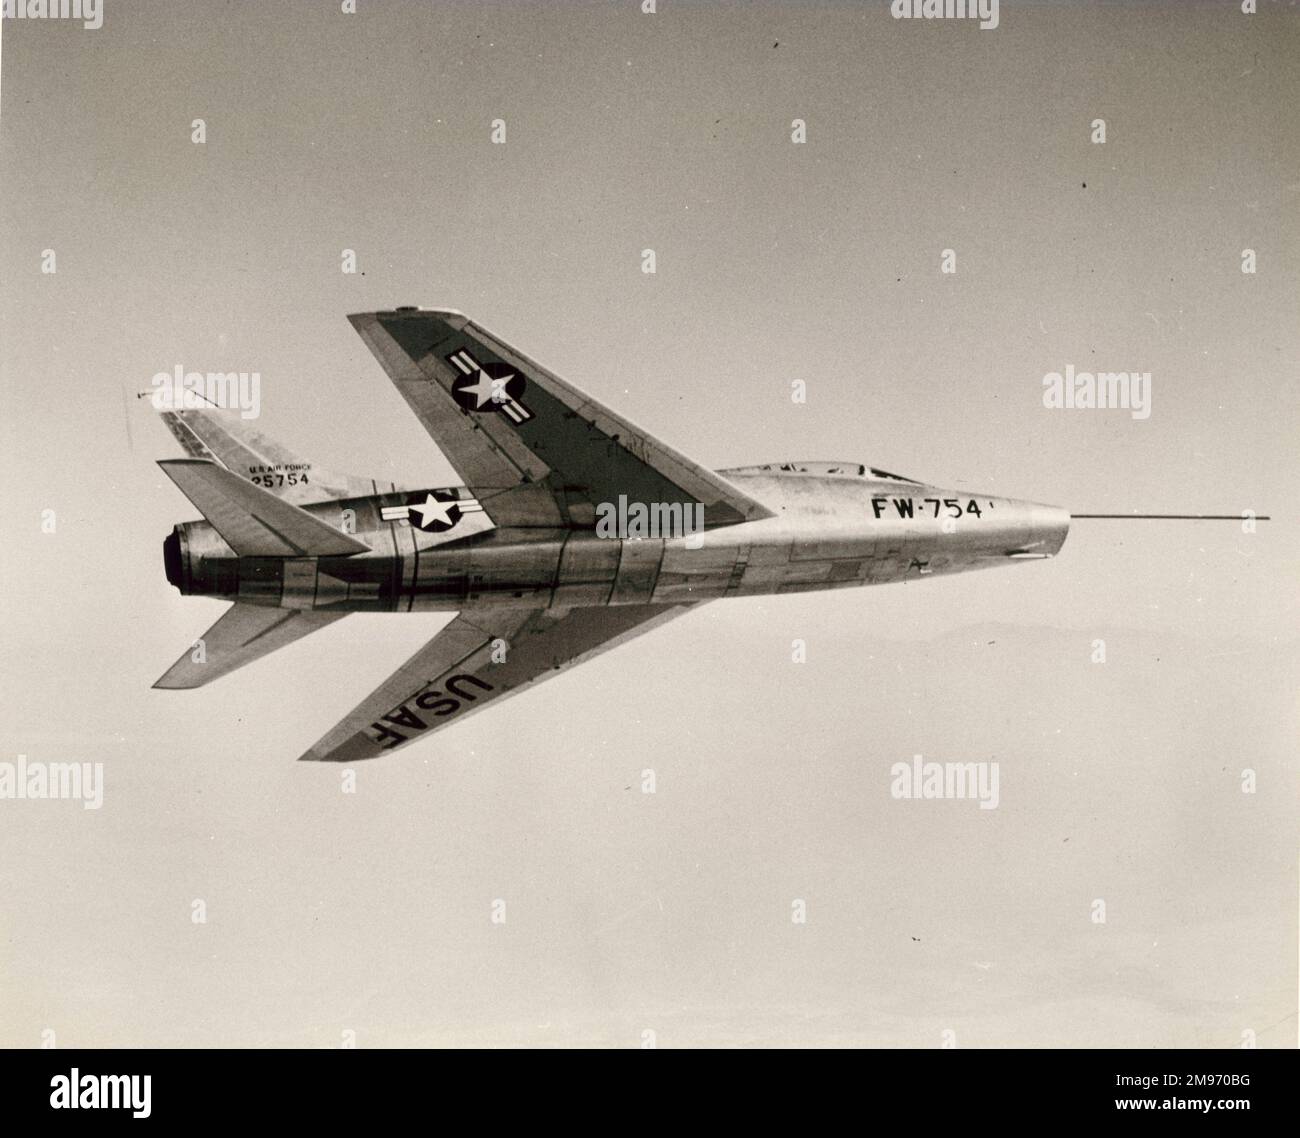 Il primo prototipo nordamericano YF-100 Super Sabre, 52-5754. Foto Stock